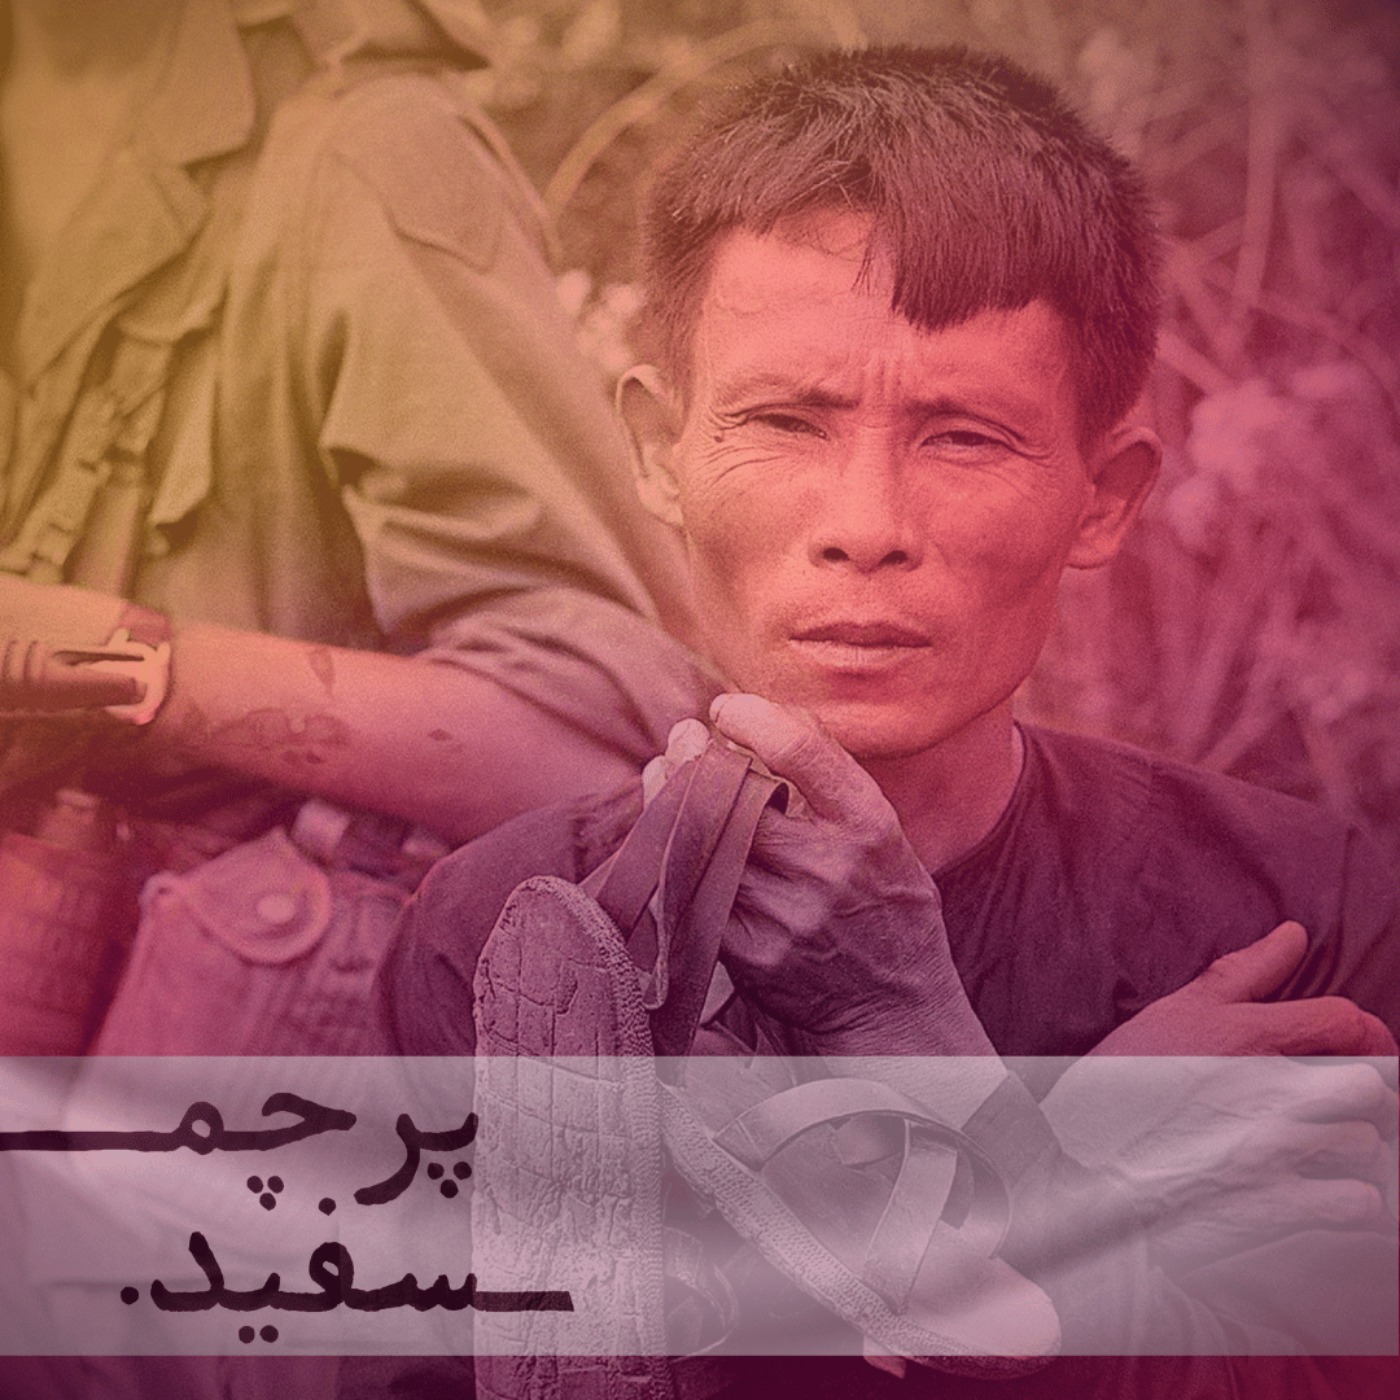 بامبو و خون - پرونده جنگ ویتنام - قسمت اول